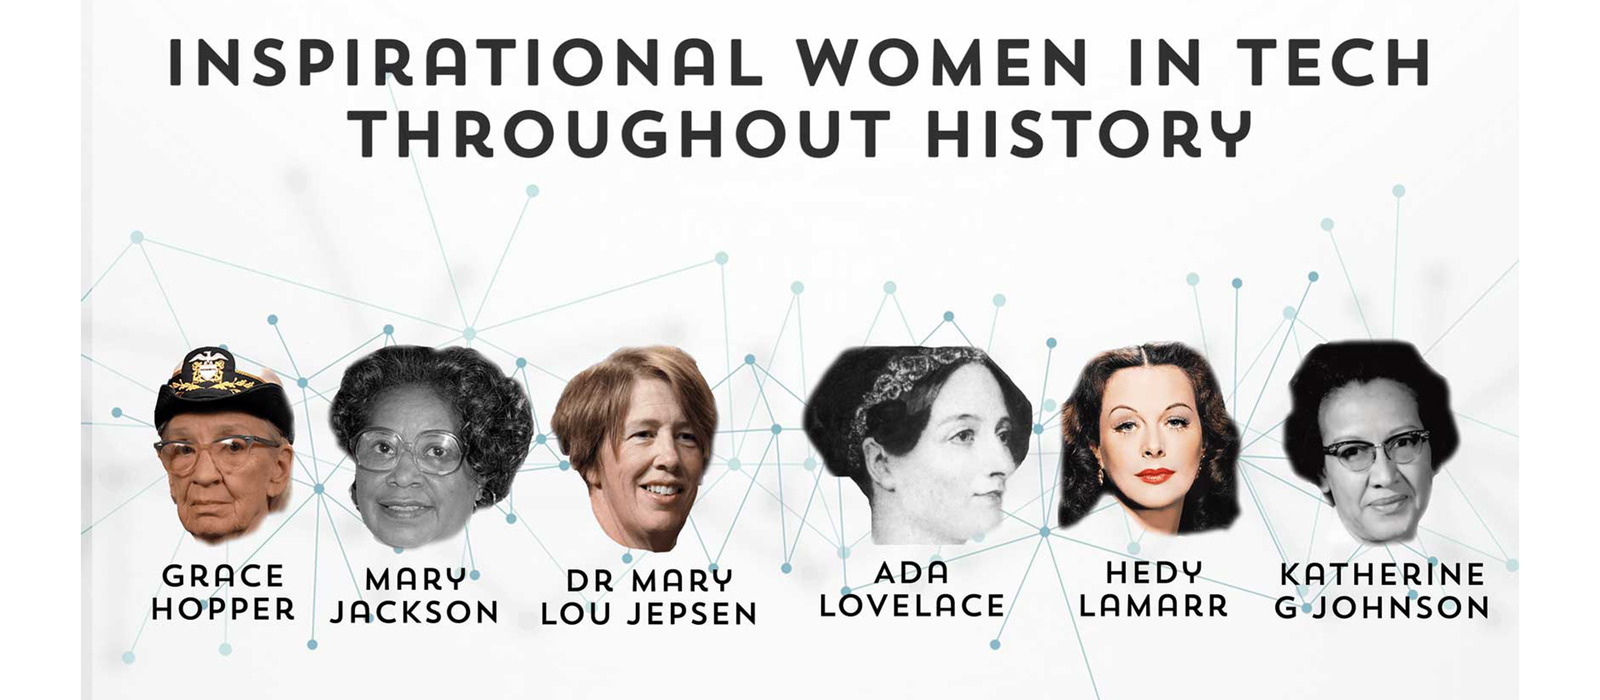 women-in-tech-history